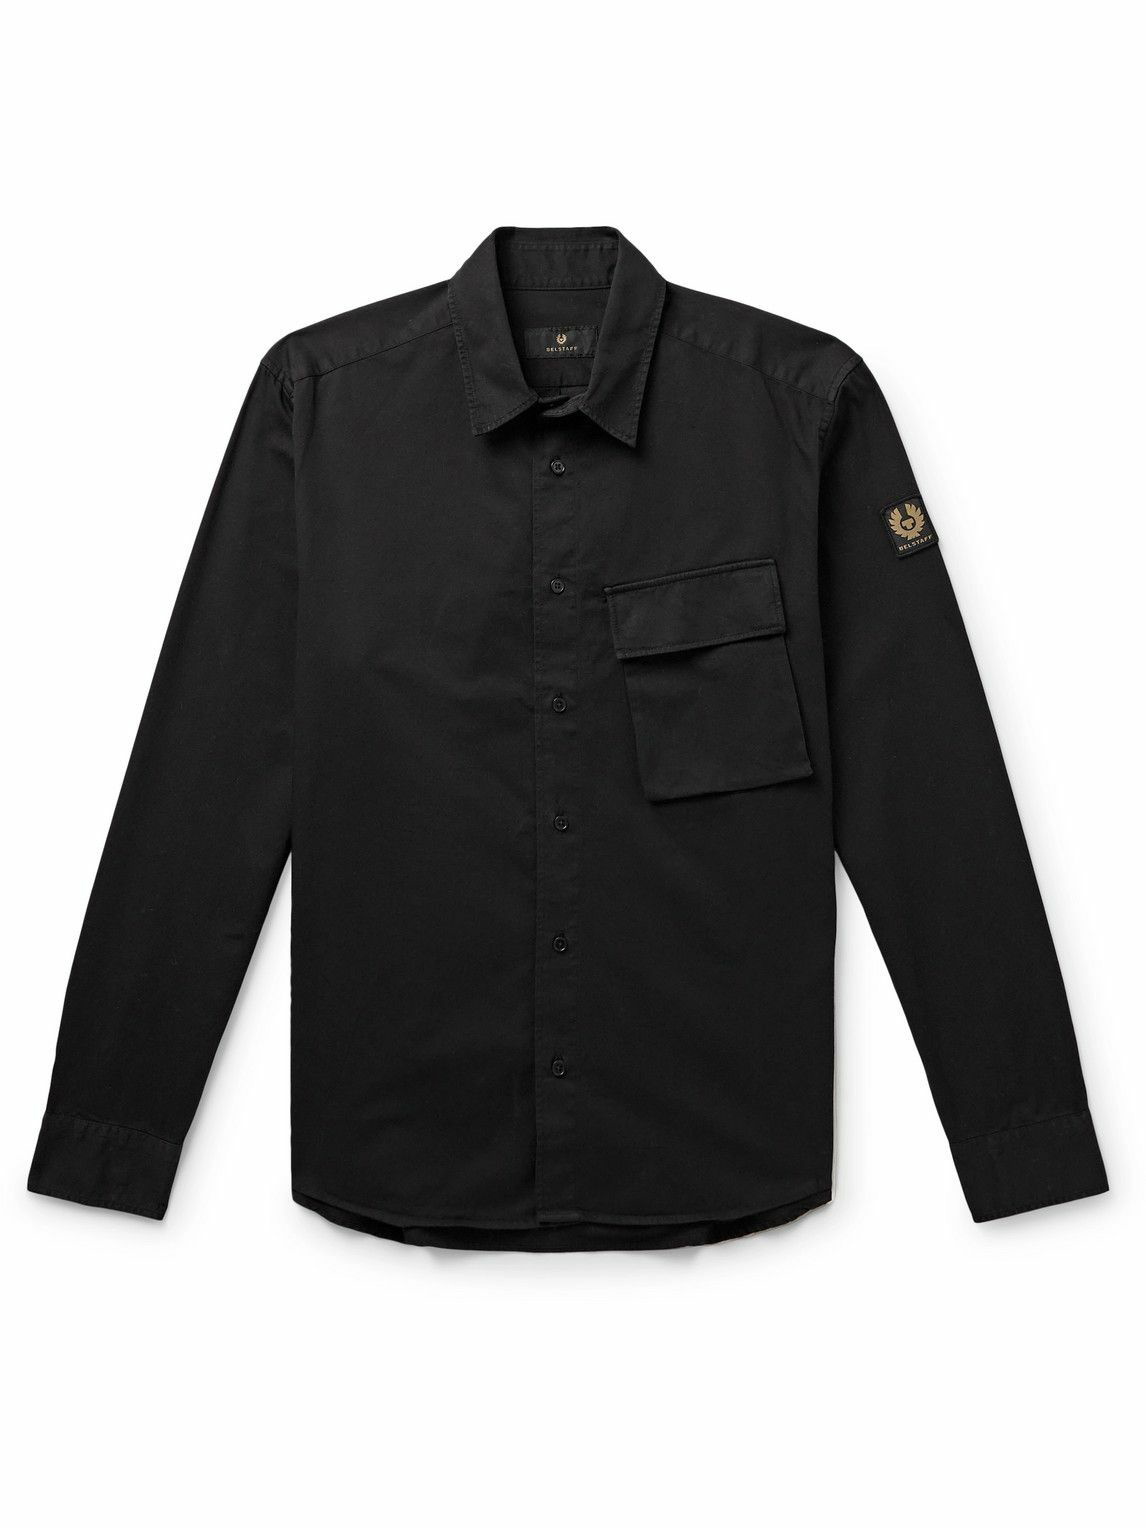 Belstaff - Scale Garment-Dyed Cotton-Twill Shirt - Black Belstaff